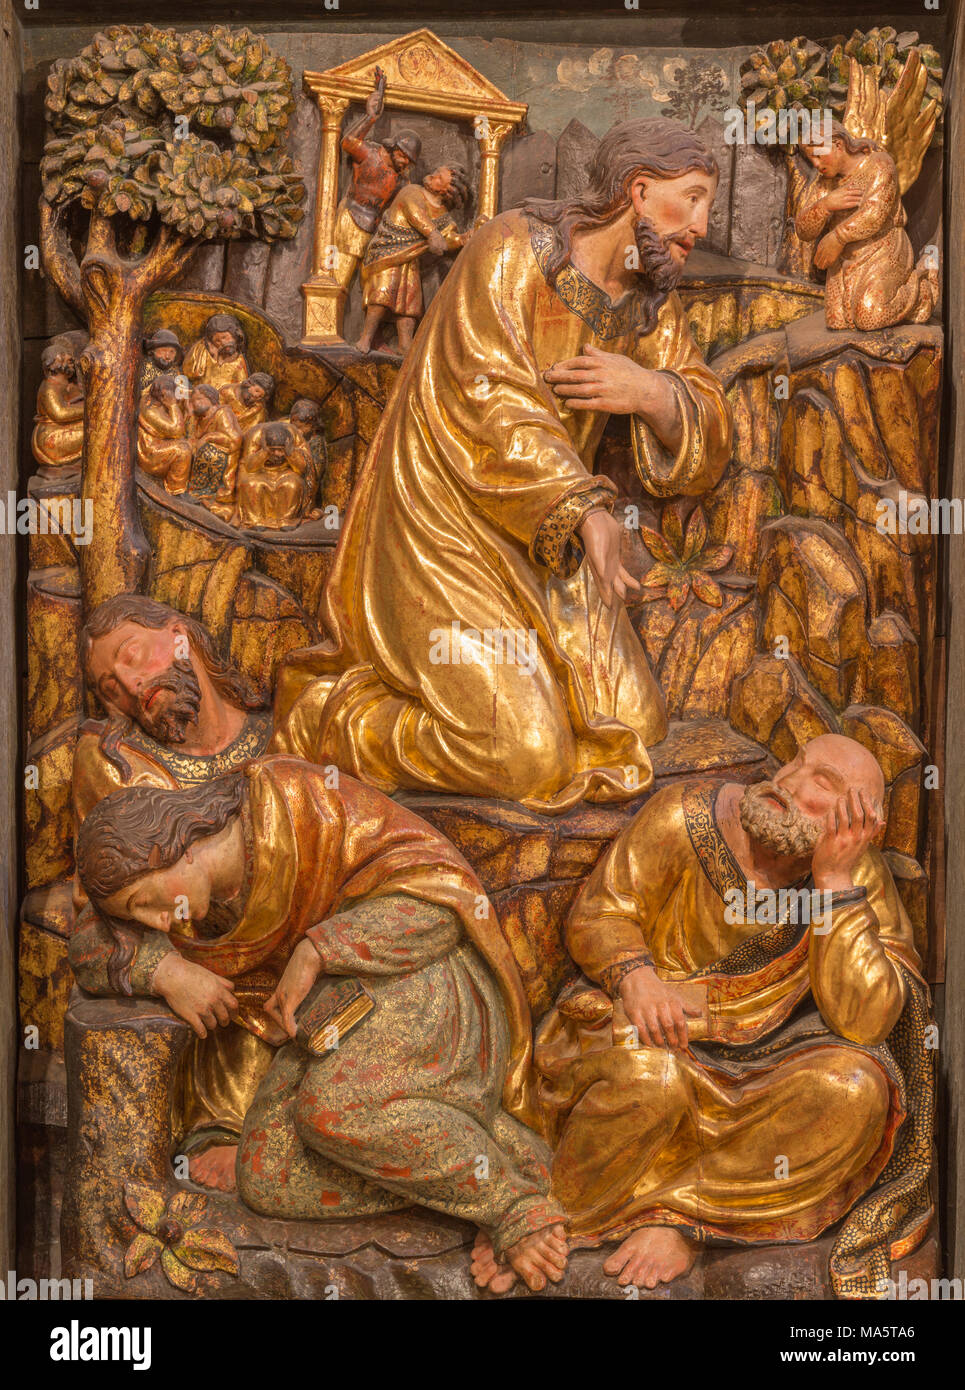 Saragozza, Spagna - 3 Marzo 2018: Il polychome rinascimentale scolpito rilievo della preghiera di Jesu nel giardino del Getsemani nella chiesa Iglesia de San Miguel de lo Foto Stock